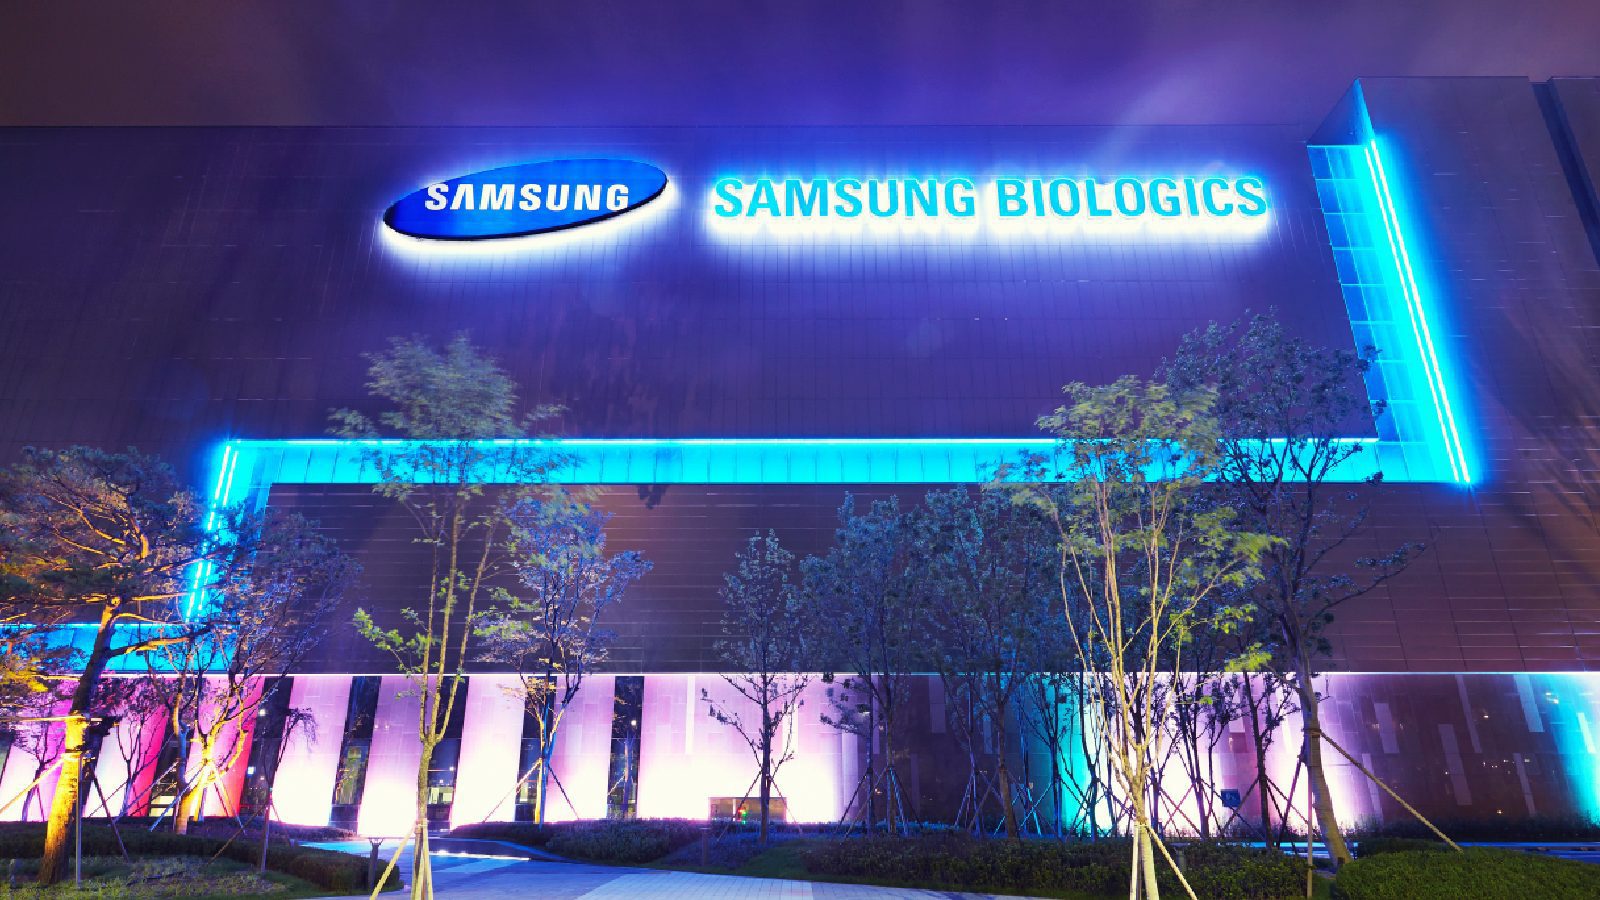 Samsung Biologics зафиксировала более 1 триллиона продаж за первые шесть месяцев года